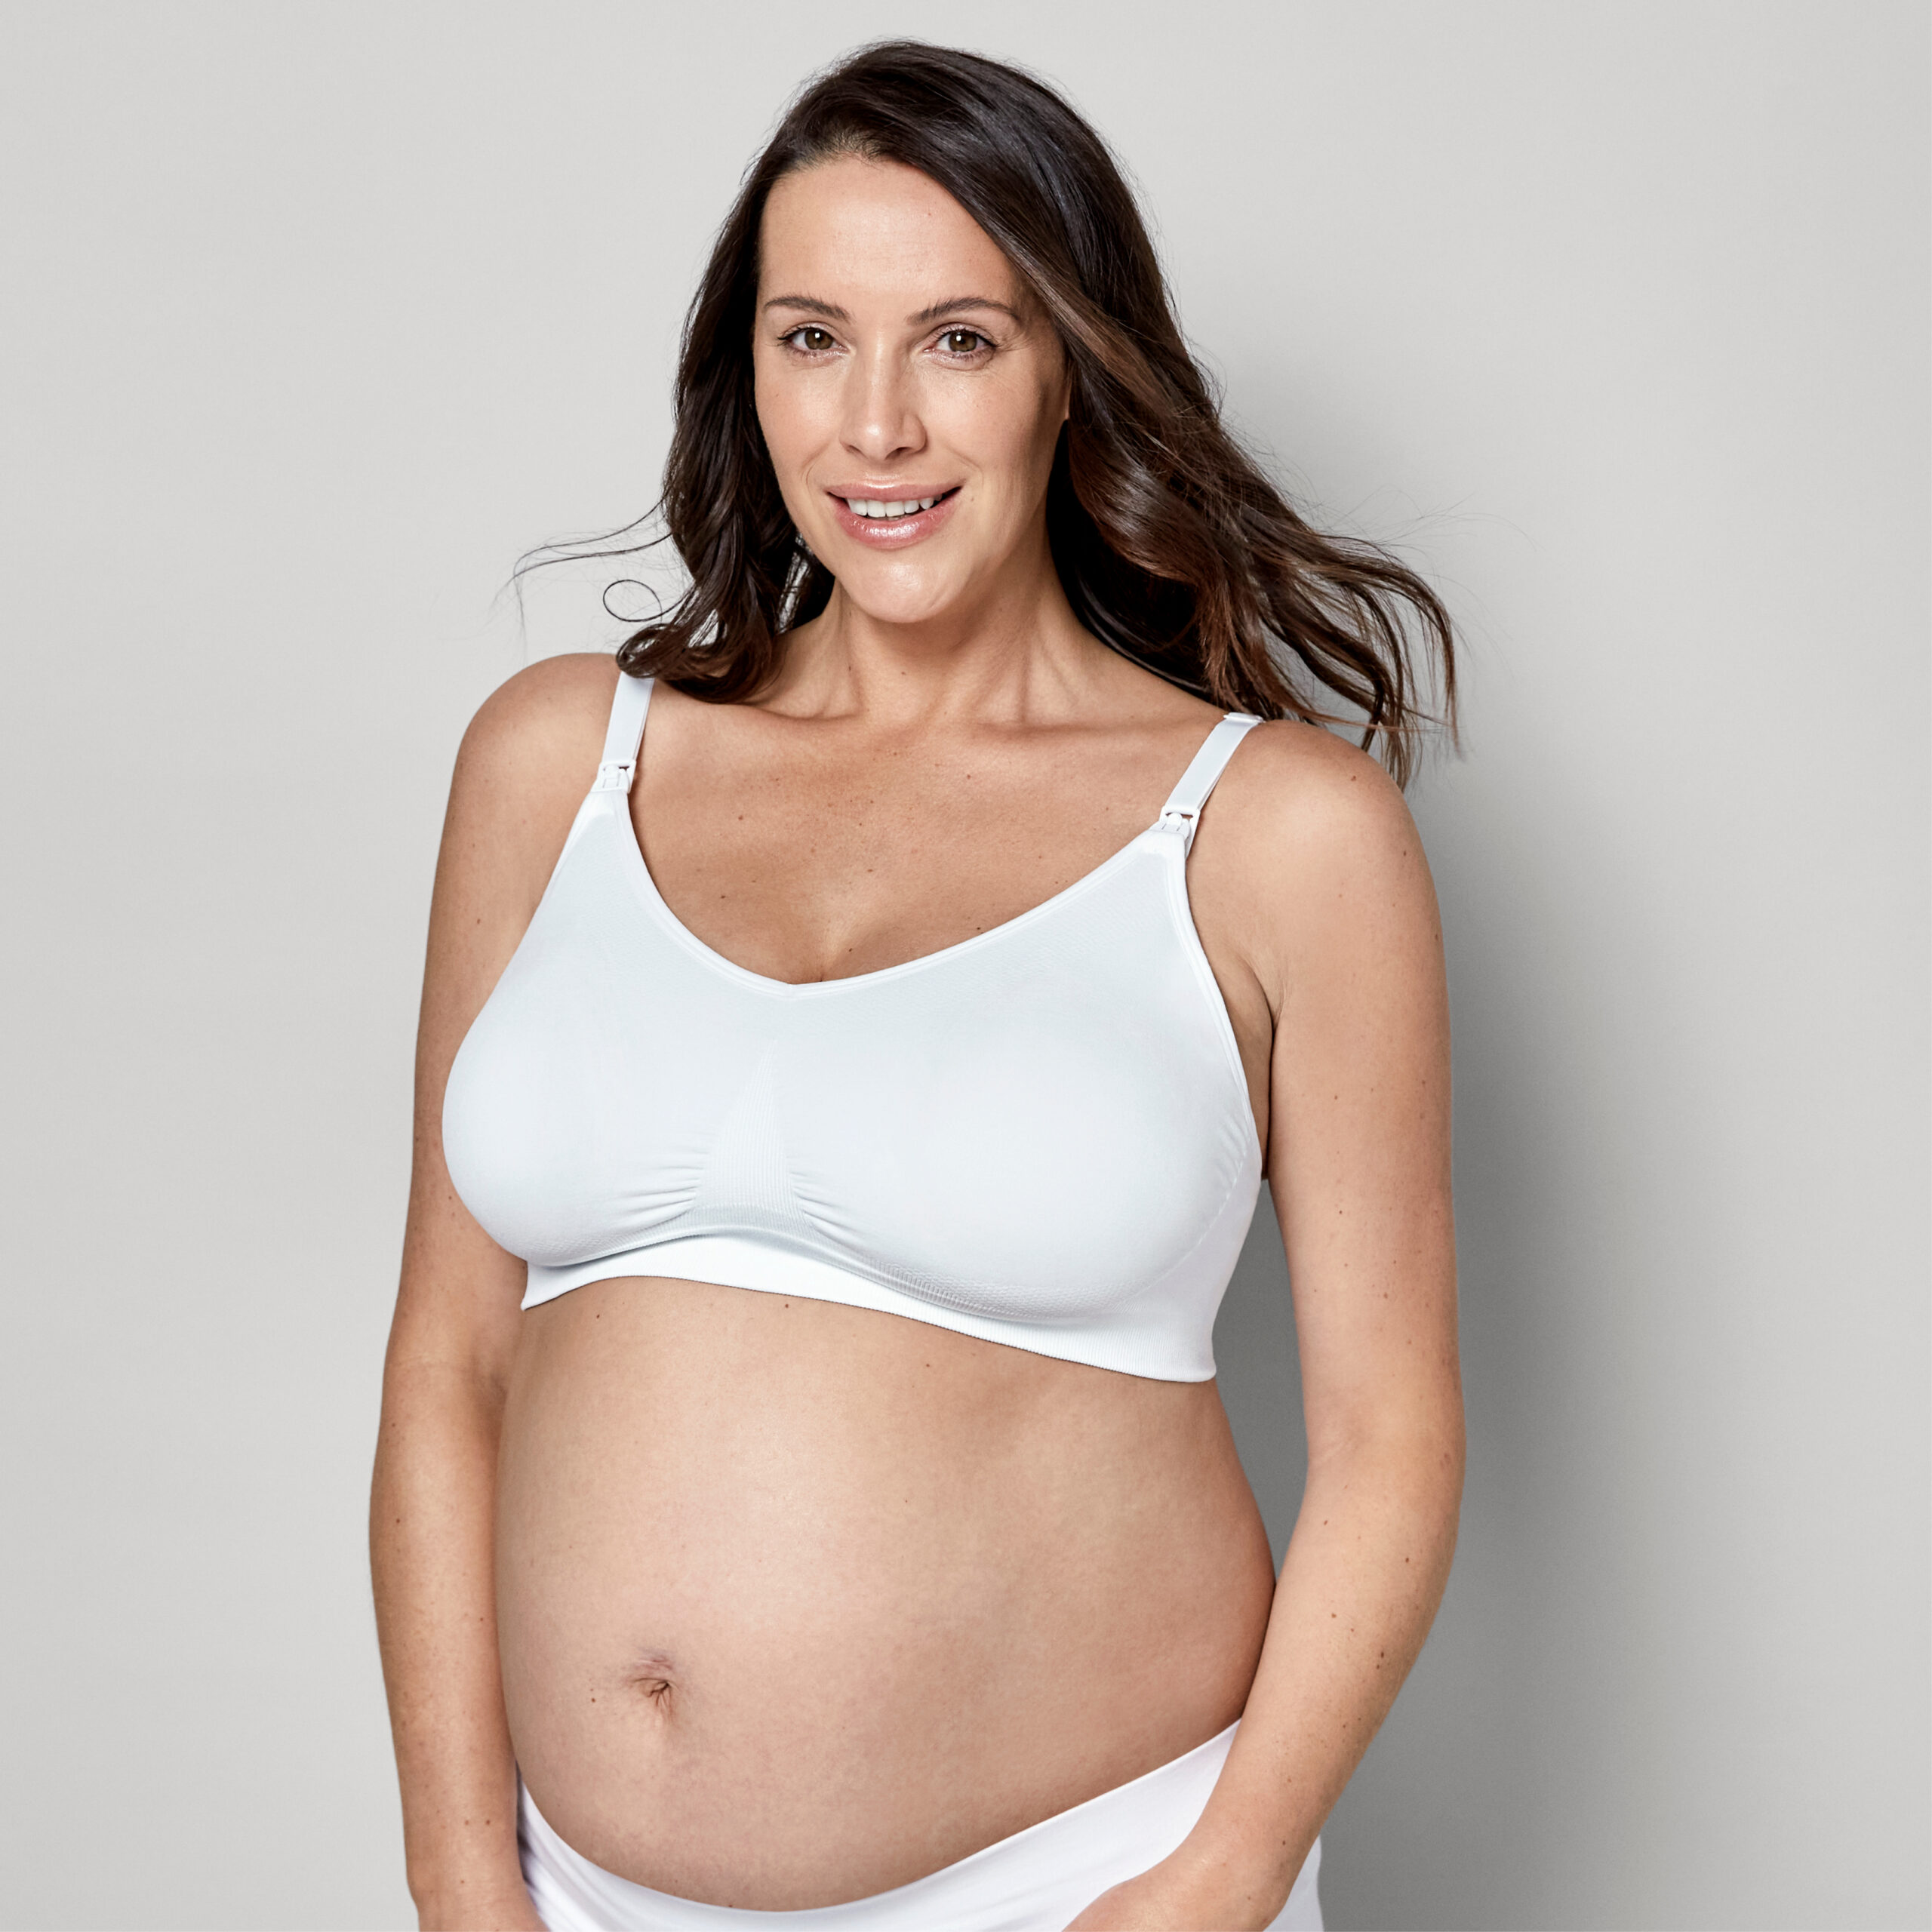 Buy Medela Keep Cool Breathable Maternity & Nursing Bra White